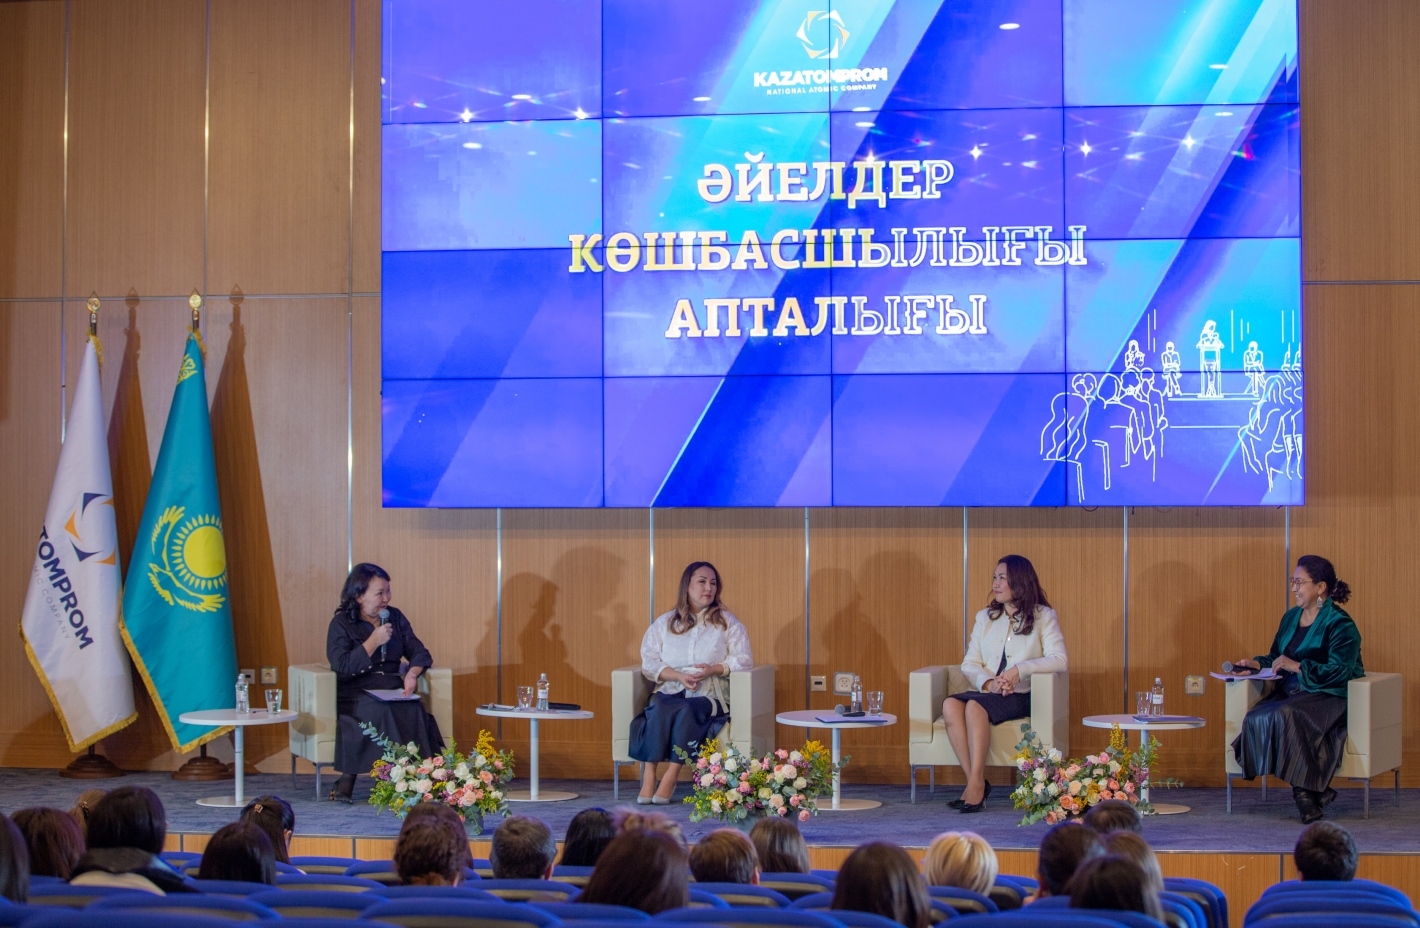 Women's Leadership Week in Kazatomprom